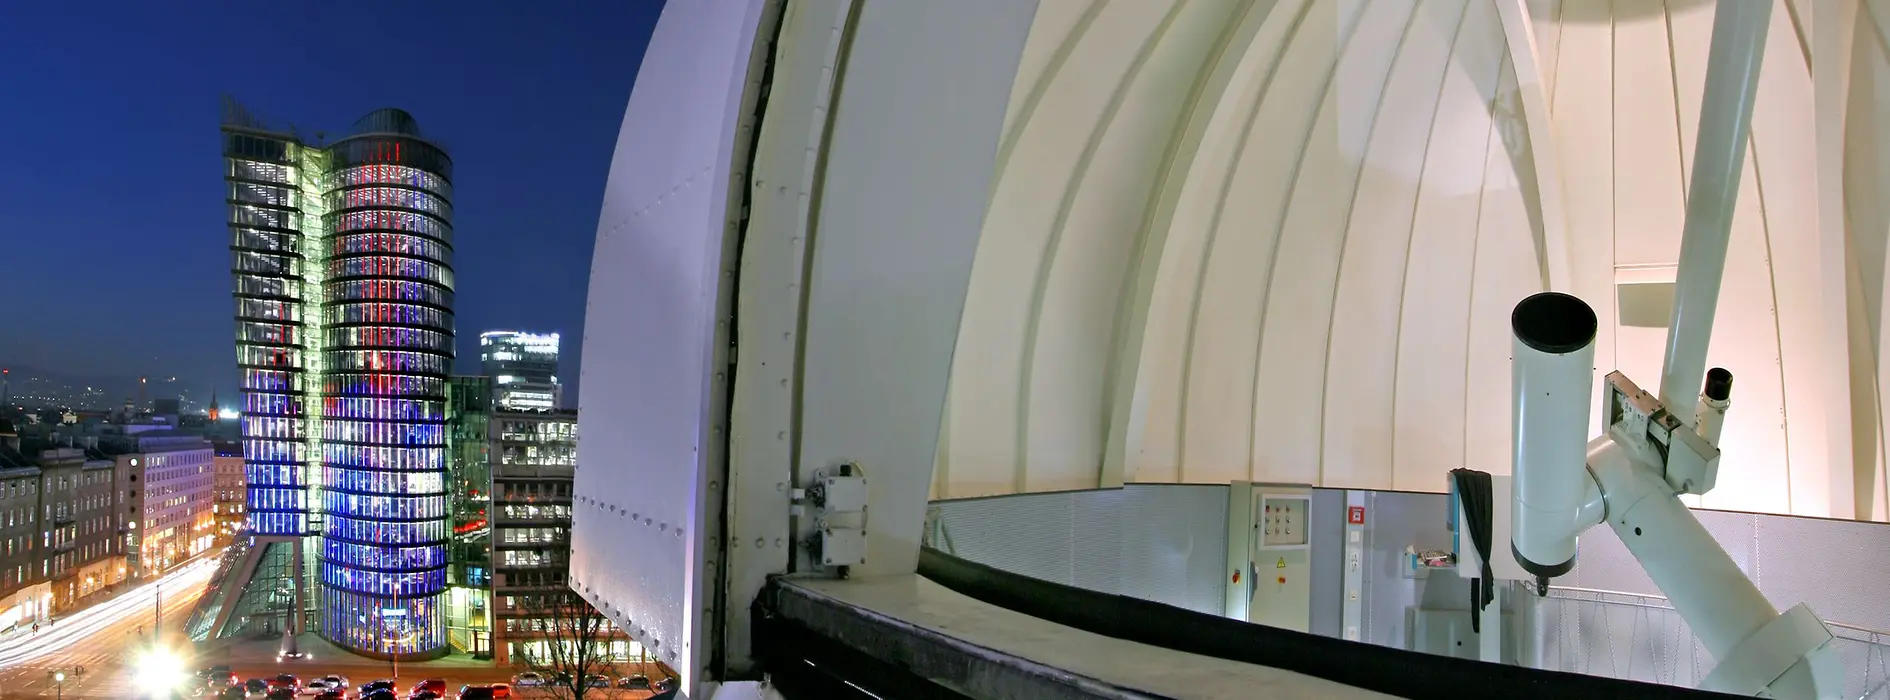 Observatorio Urania